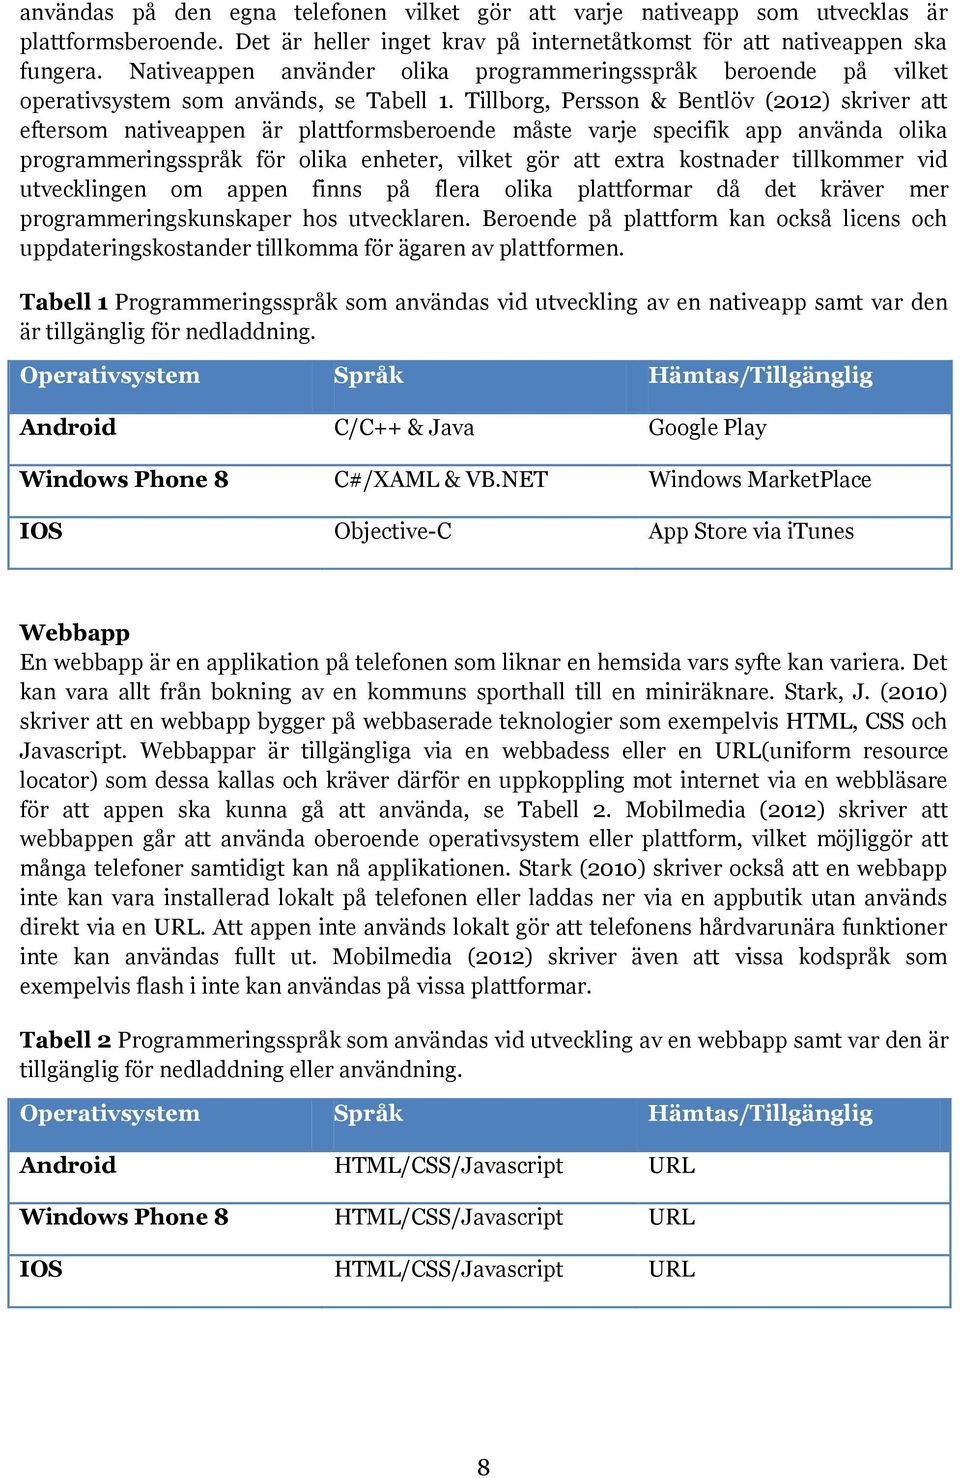 Tillborg, Persson & Bentlöv (2012) skriver att eftersom nativeappen är plattformsberoende måste varje specifik app använda olika programmeringsspråk för olika enheter, vilket gör att extra kostnader